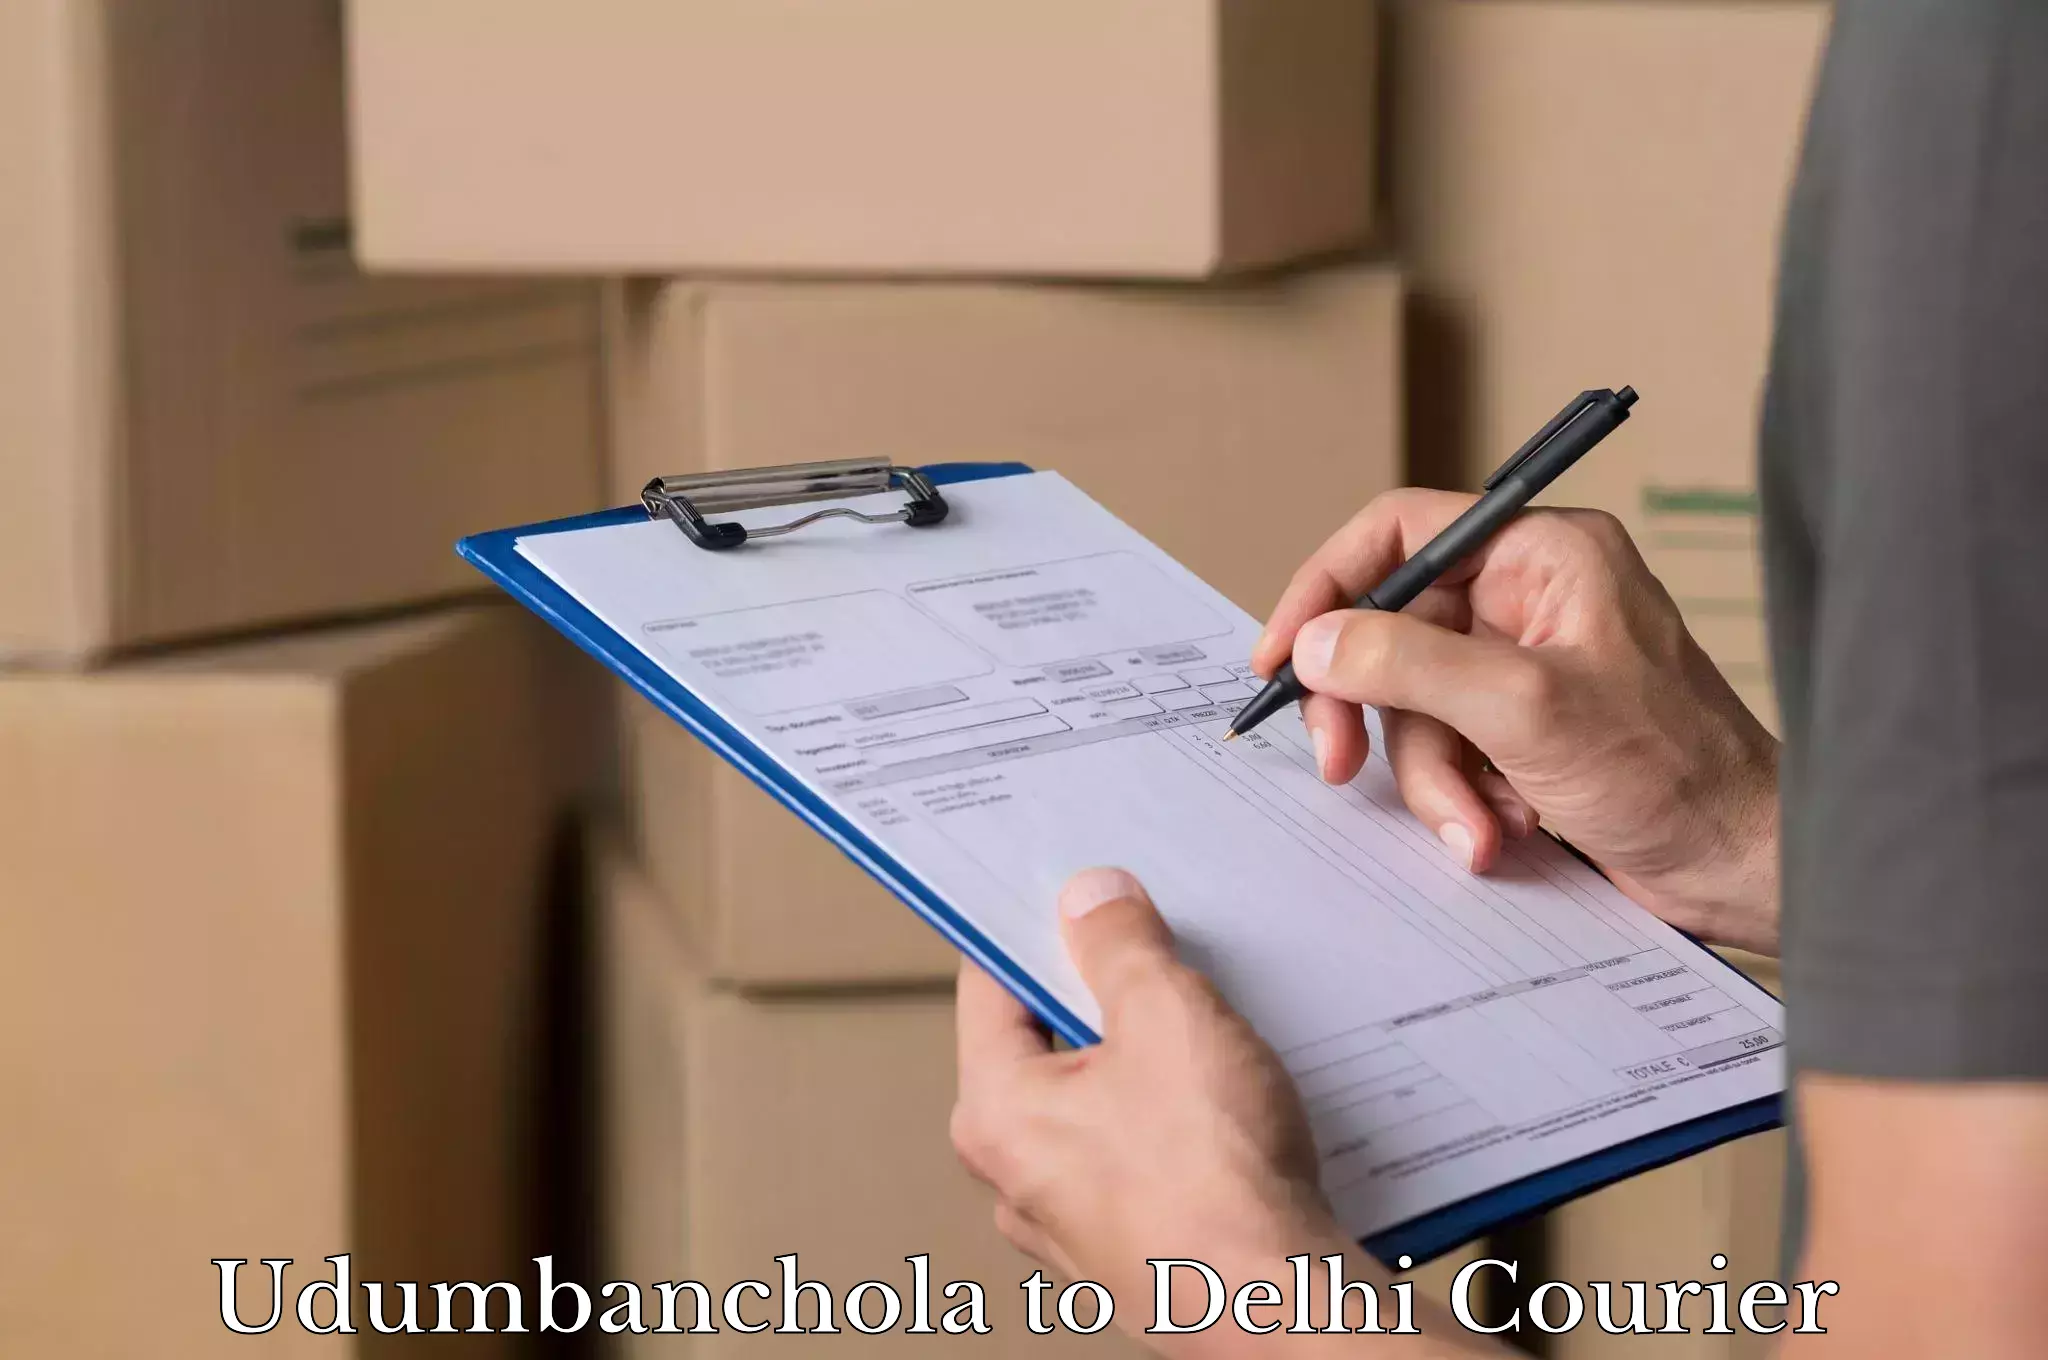 Luggage transfer service Udumbanchola to NIT Delhi